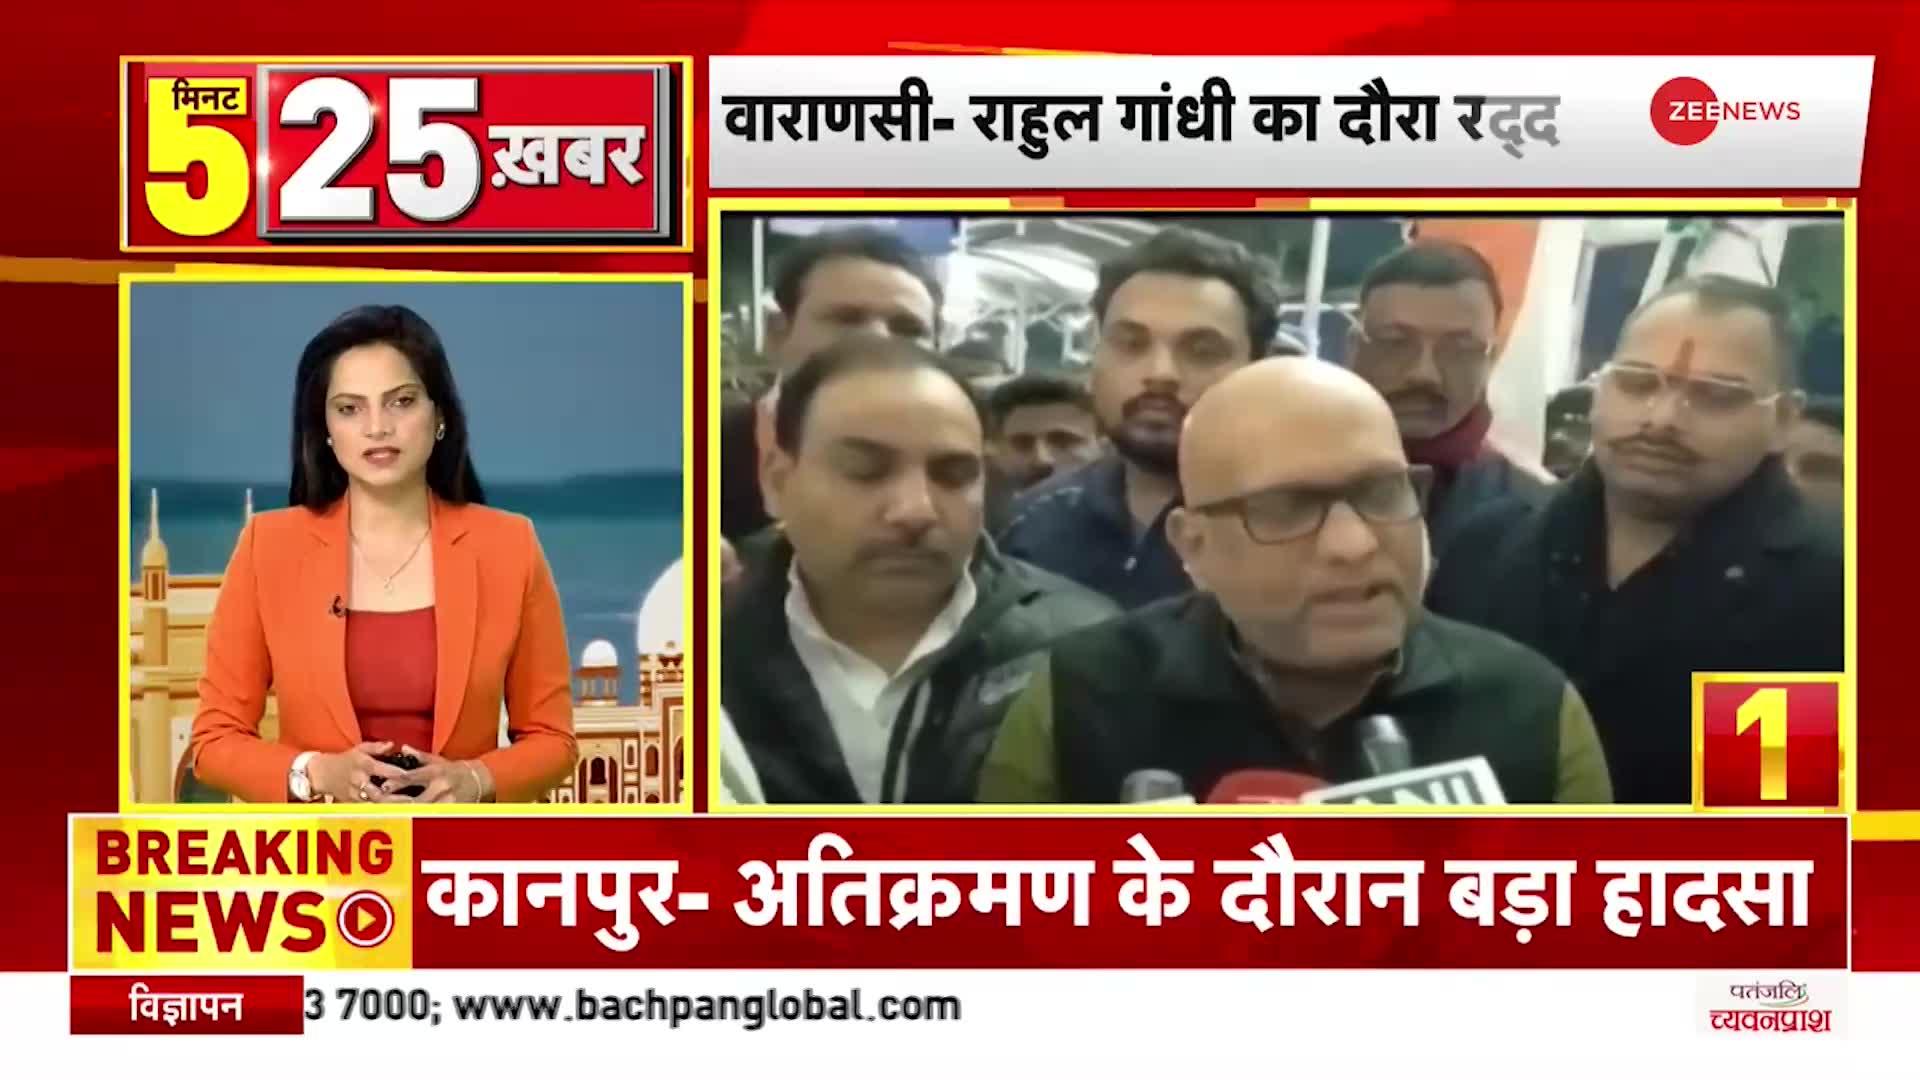 Top 25: Congress नेता Rahul Gandhi का Varanasi दौरा रद्द, विमान को Landing की नहीं मिली अनुमति